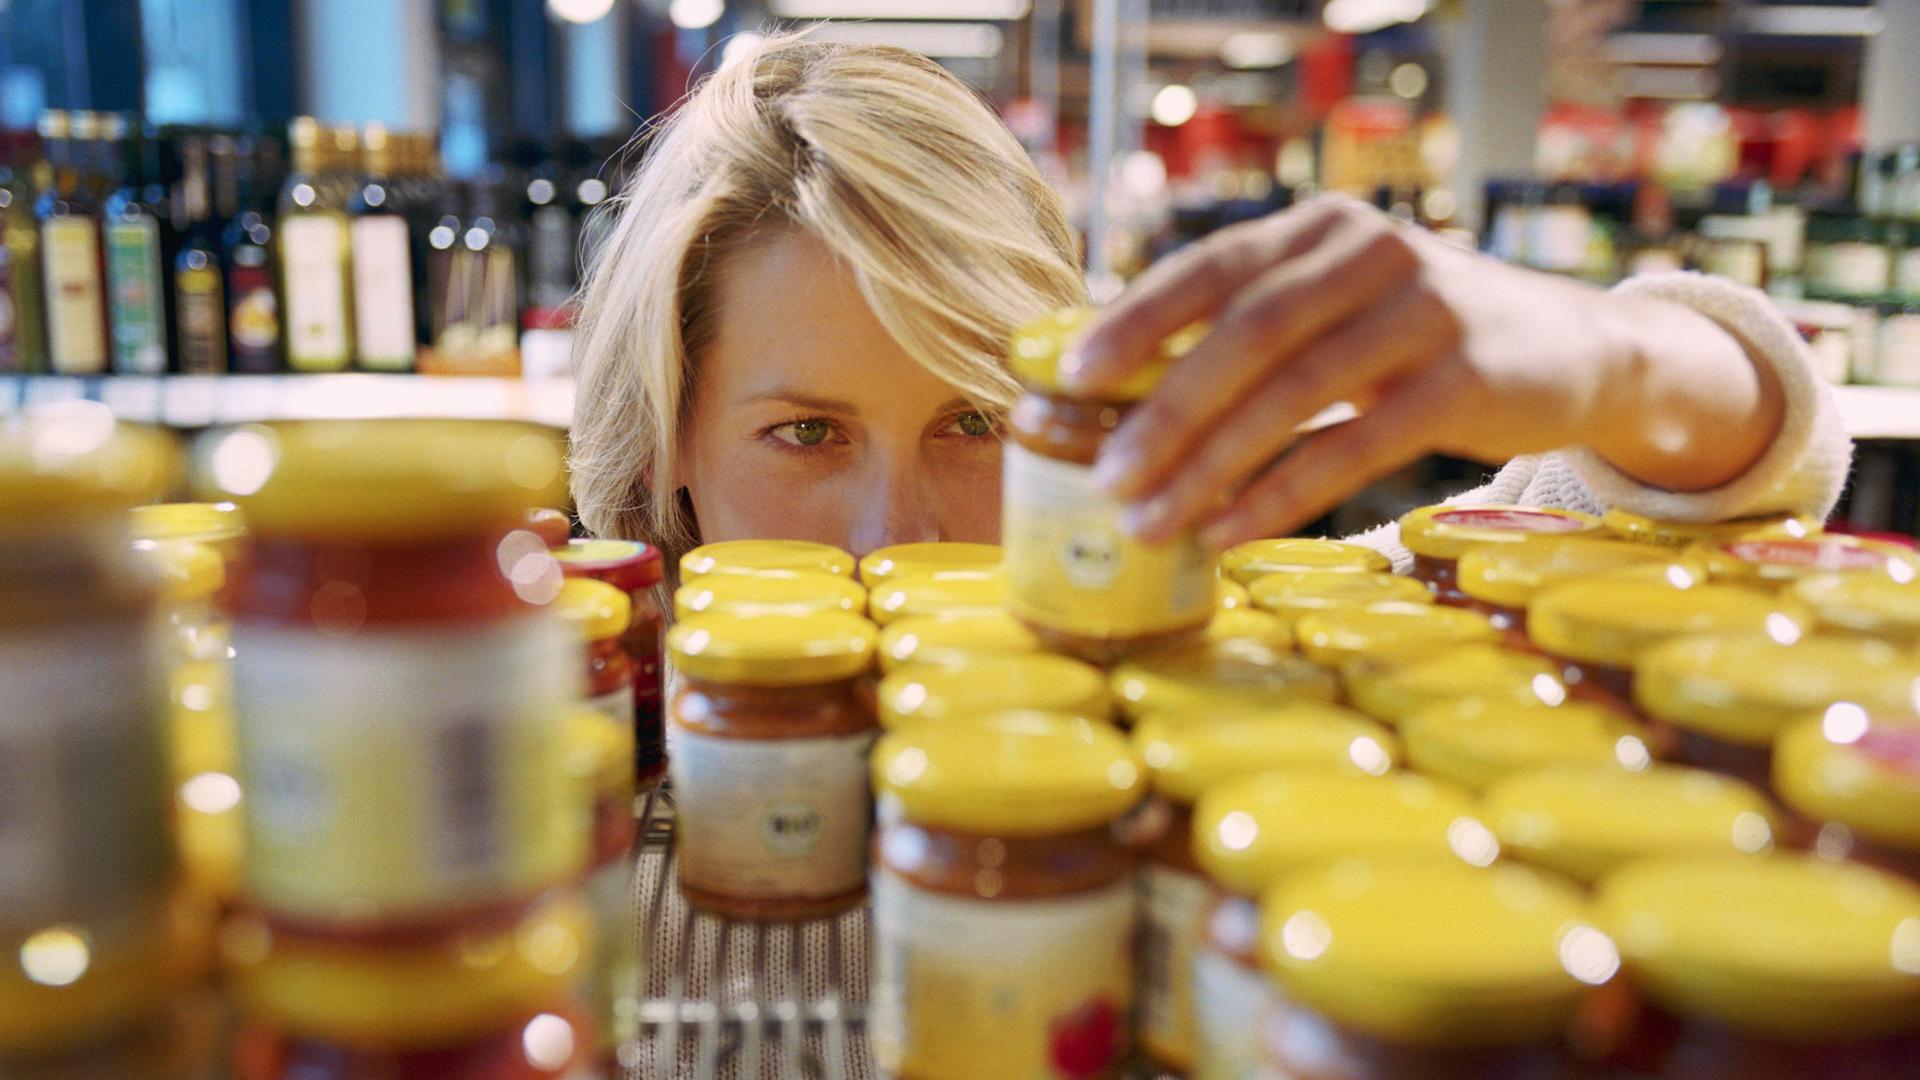 Blick durch ein Supermarktregal mit Gläschen mit gelben Deckeln. Man sieht den Kopf einer Frau, die sich ein Gläschen anguckt was sie in der Hand hält.